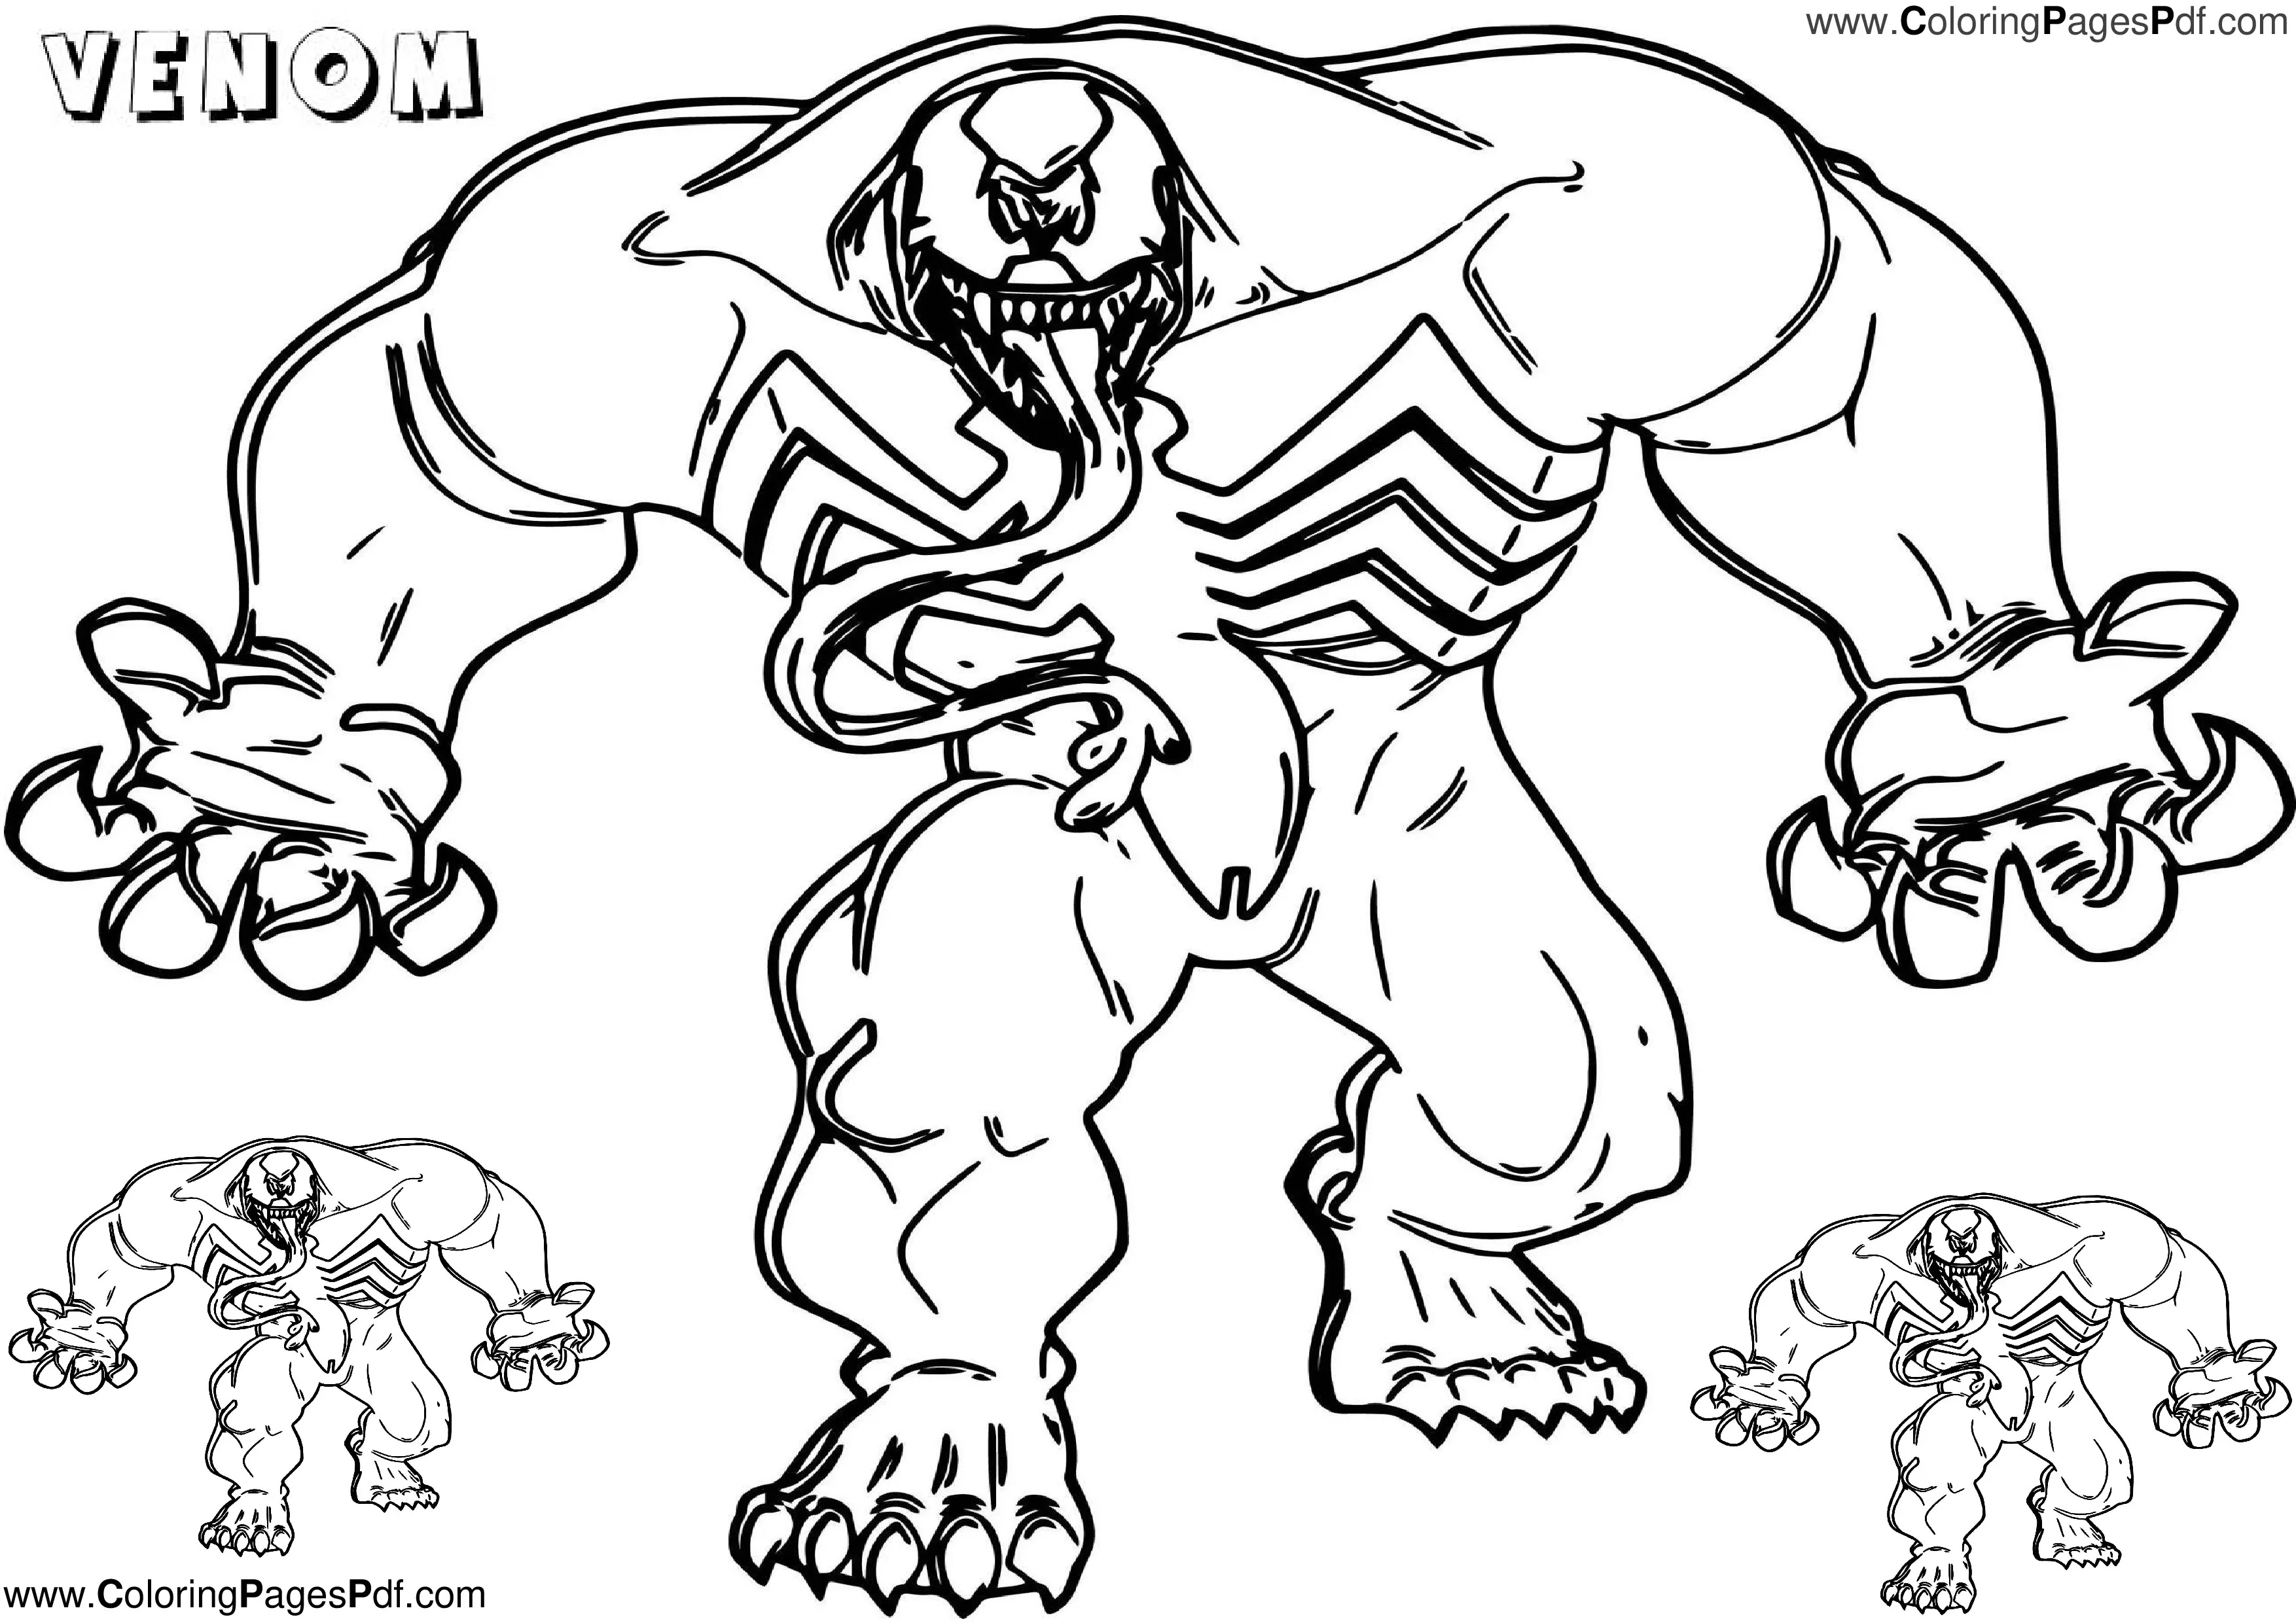 Venom coloring page